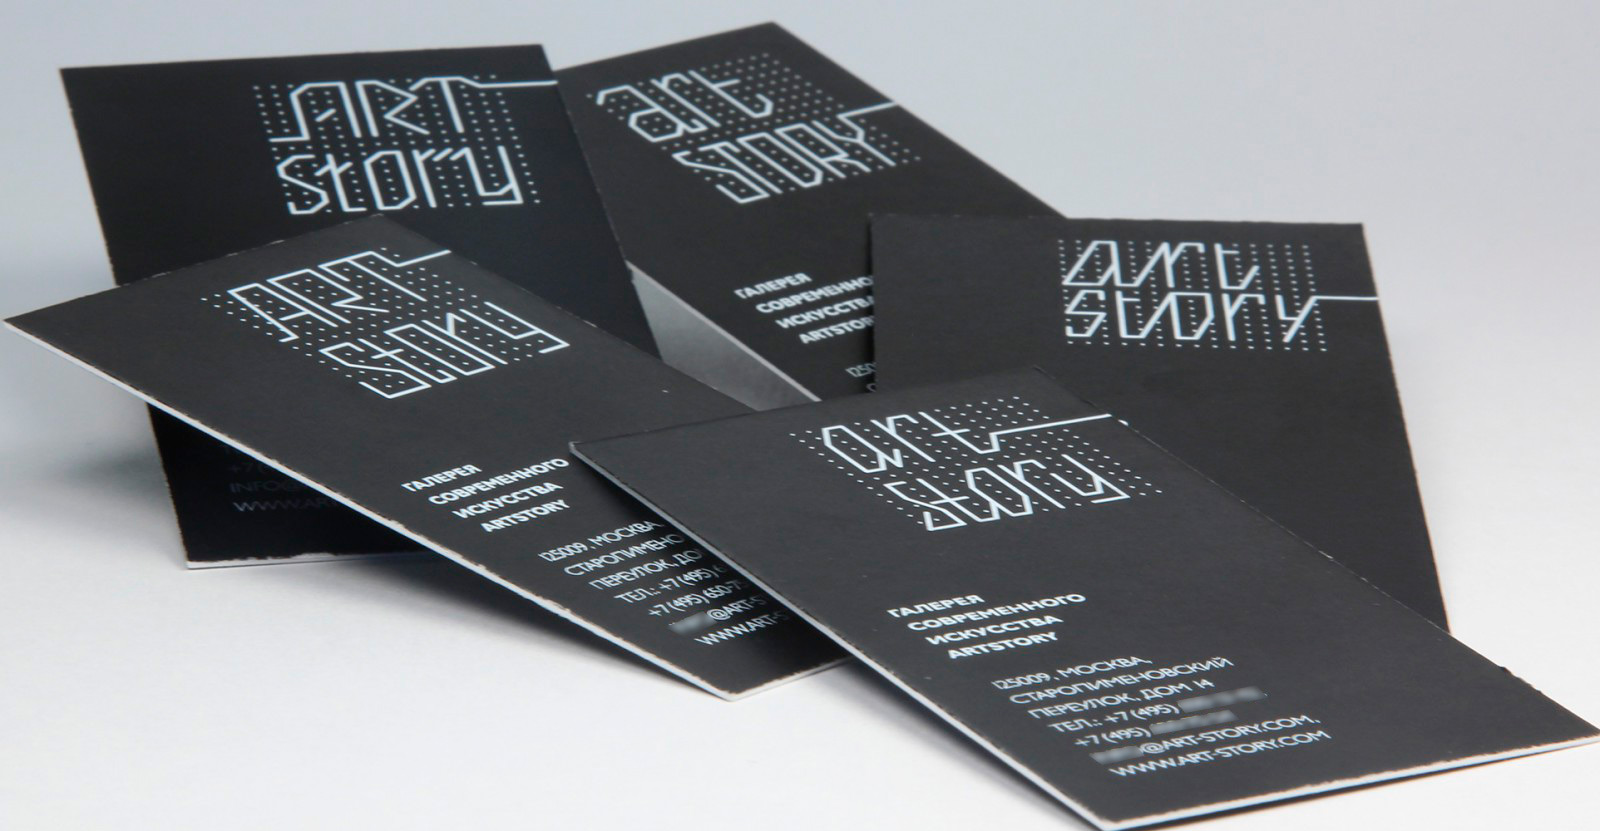 визитка на черной бумаге с применением технологии шелкография компании Арт стори